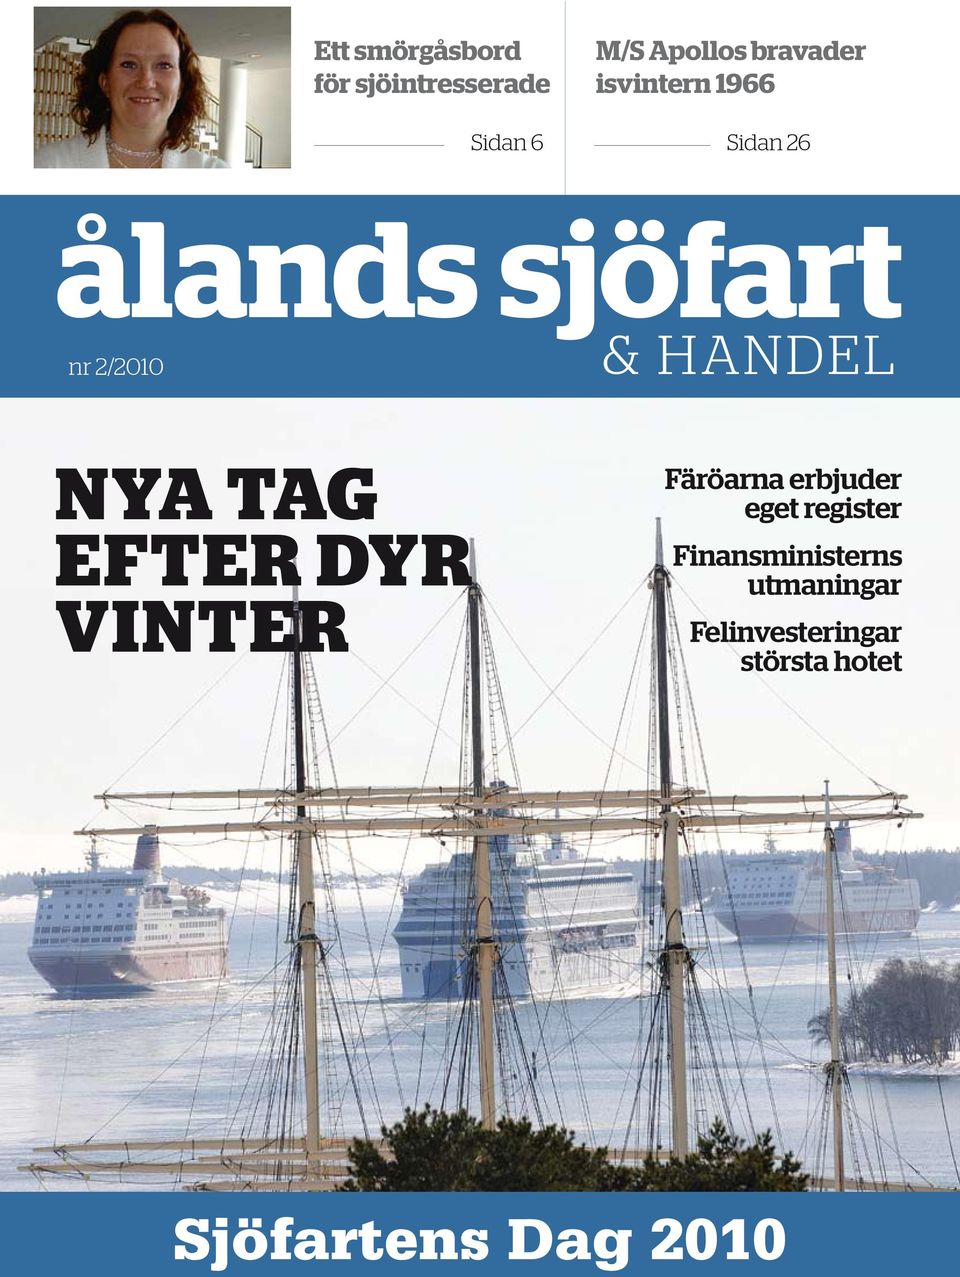 tag efter dyr vinter Färöarna erbjuder eget register